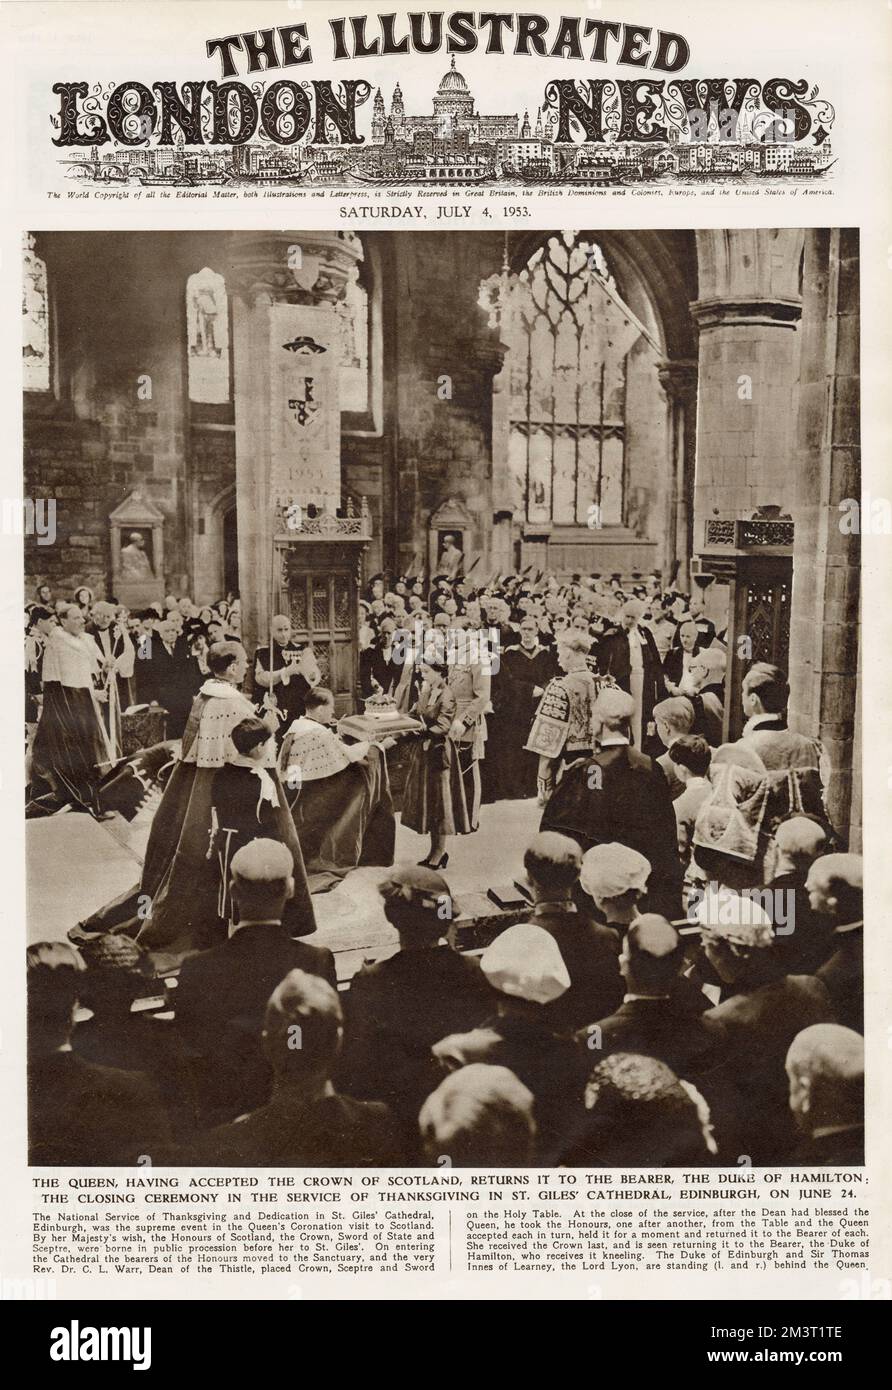 La regina Elisabetta II accetta gli "Honors of Scotland" (i Gioielli della Corona Scozzese) al Servizio Nazionale del Ringraziamento e la dedica alla Cattedrale di St Giles, Edimburgo, 24 giugno 1953. Restituisce la Corona di Scozia al Duca di Hamilton. Foto Stock